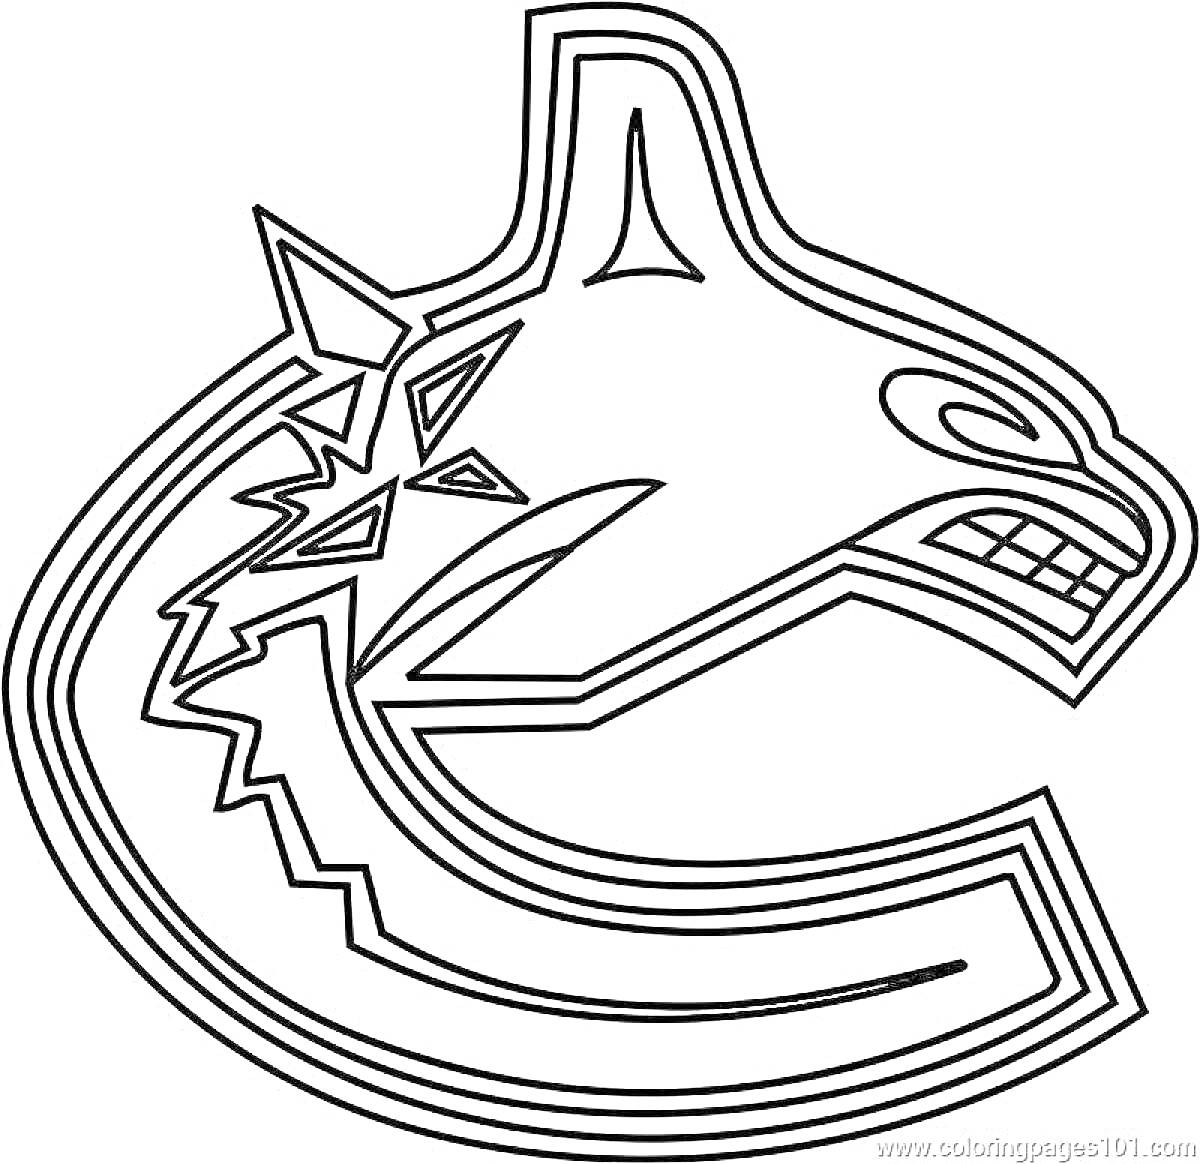 Раскраска Контур логотипа команды KHL в виде головы косатки с буквами и узорами